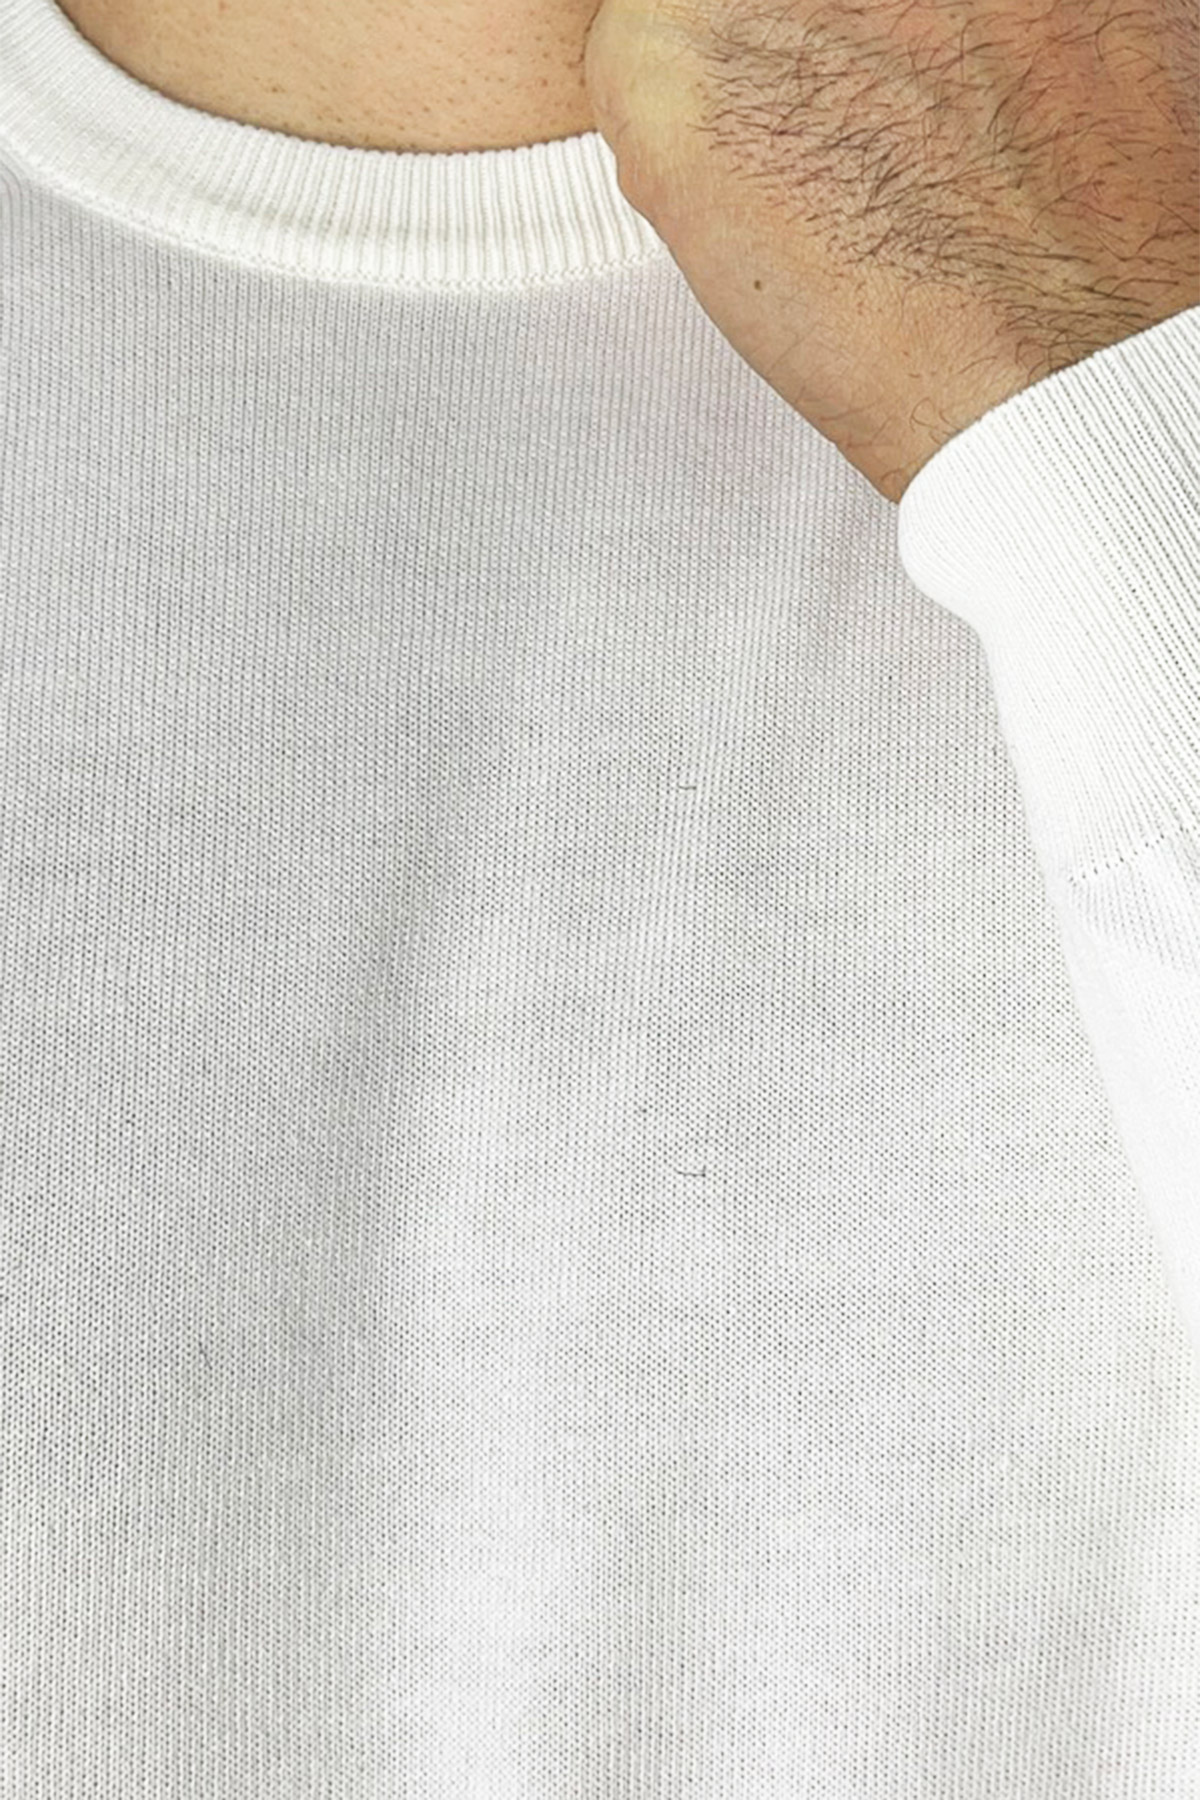 Maglioncino da uomo Bianco maniche lunghe 100% cotone di filo tinta unita